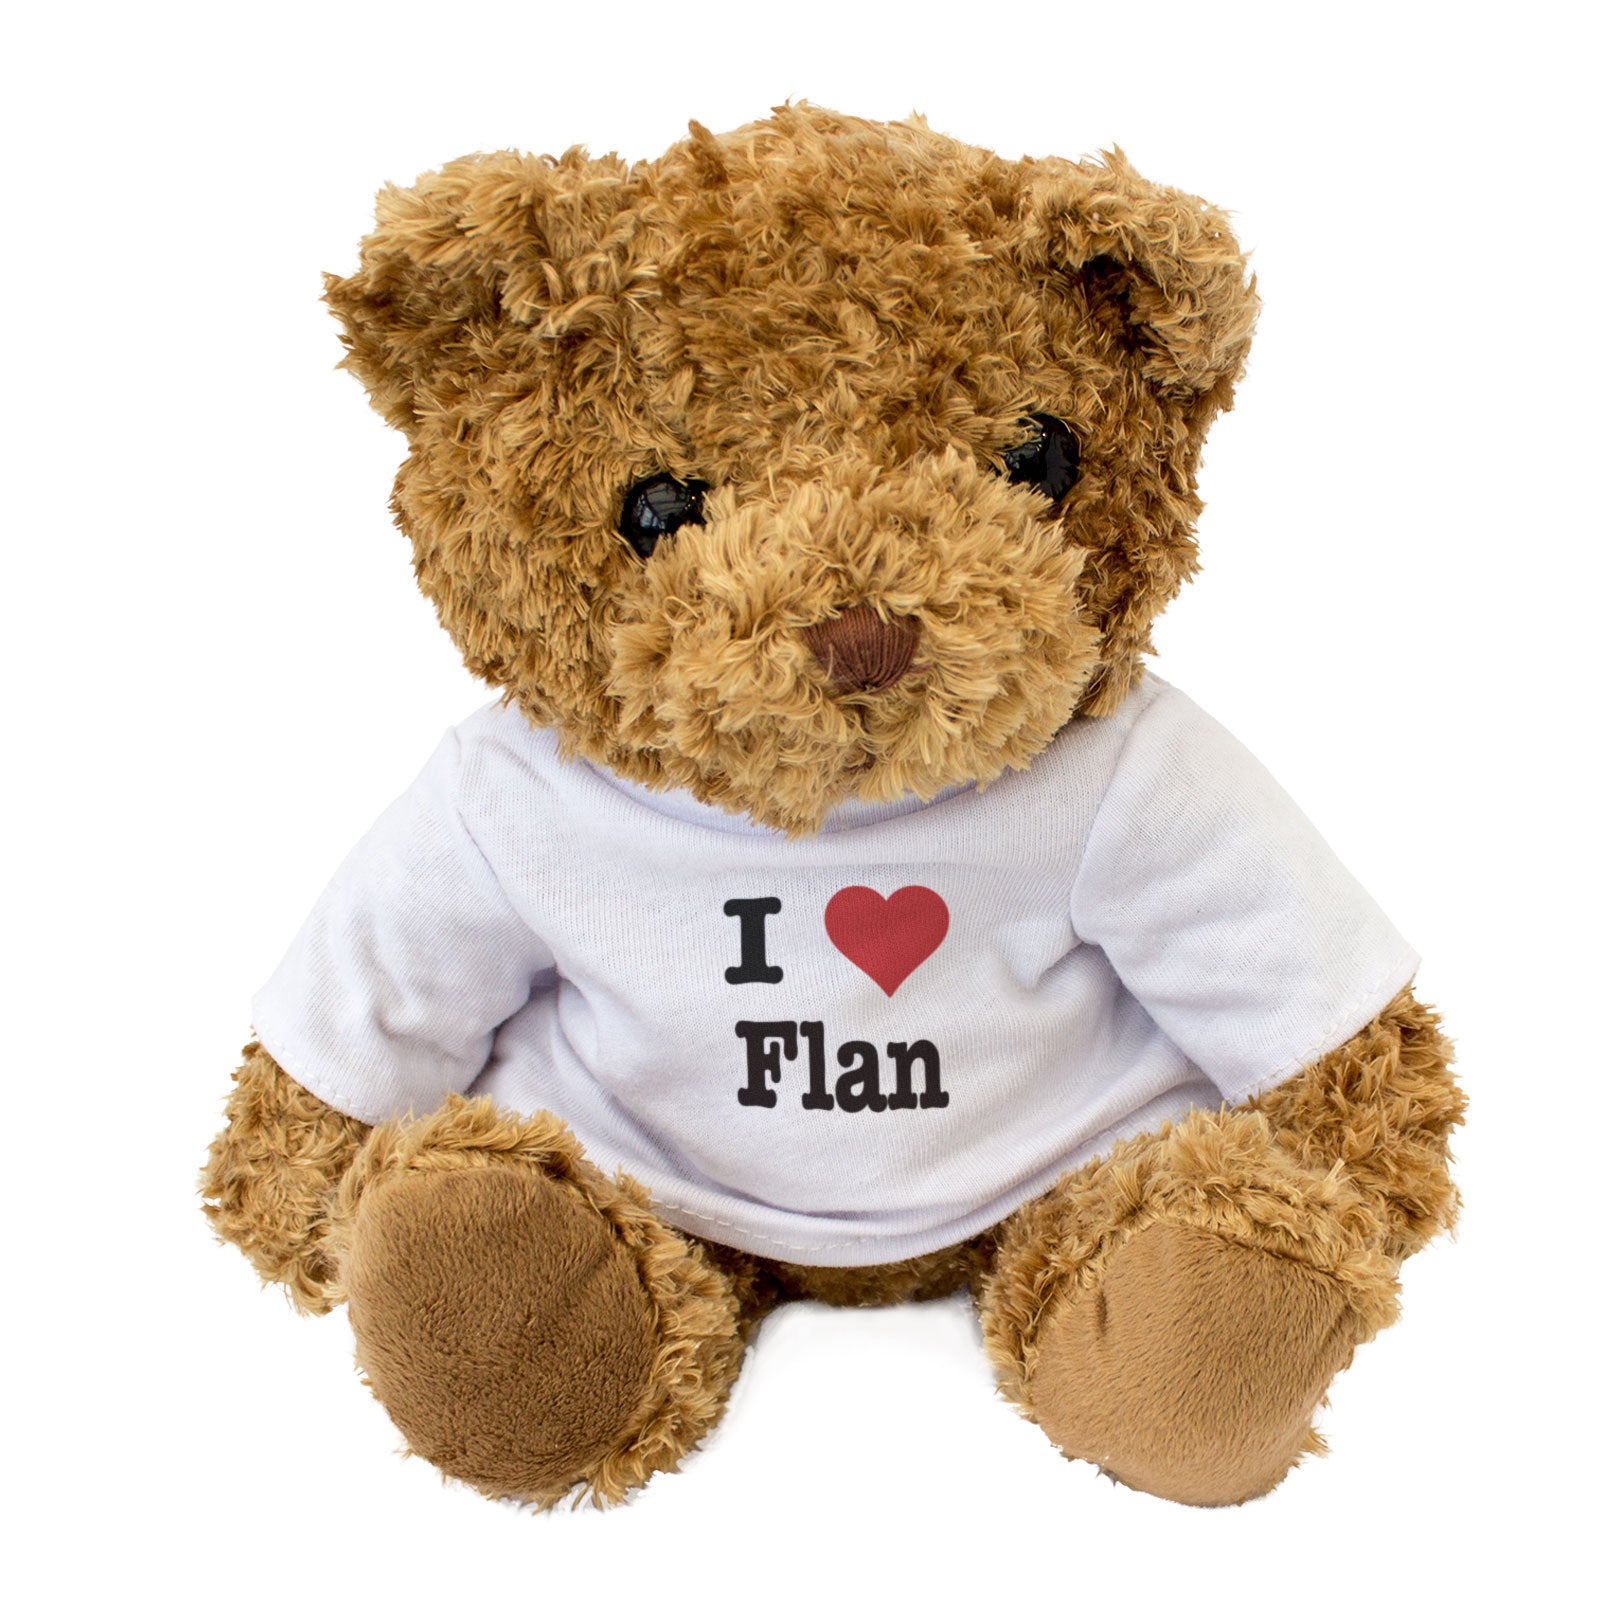 I Love Flan - Teddy Bear